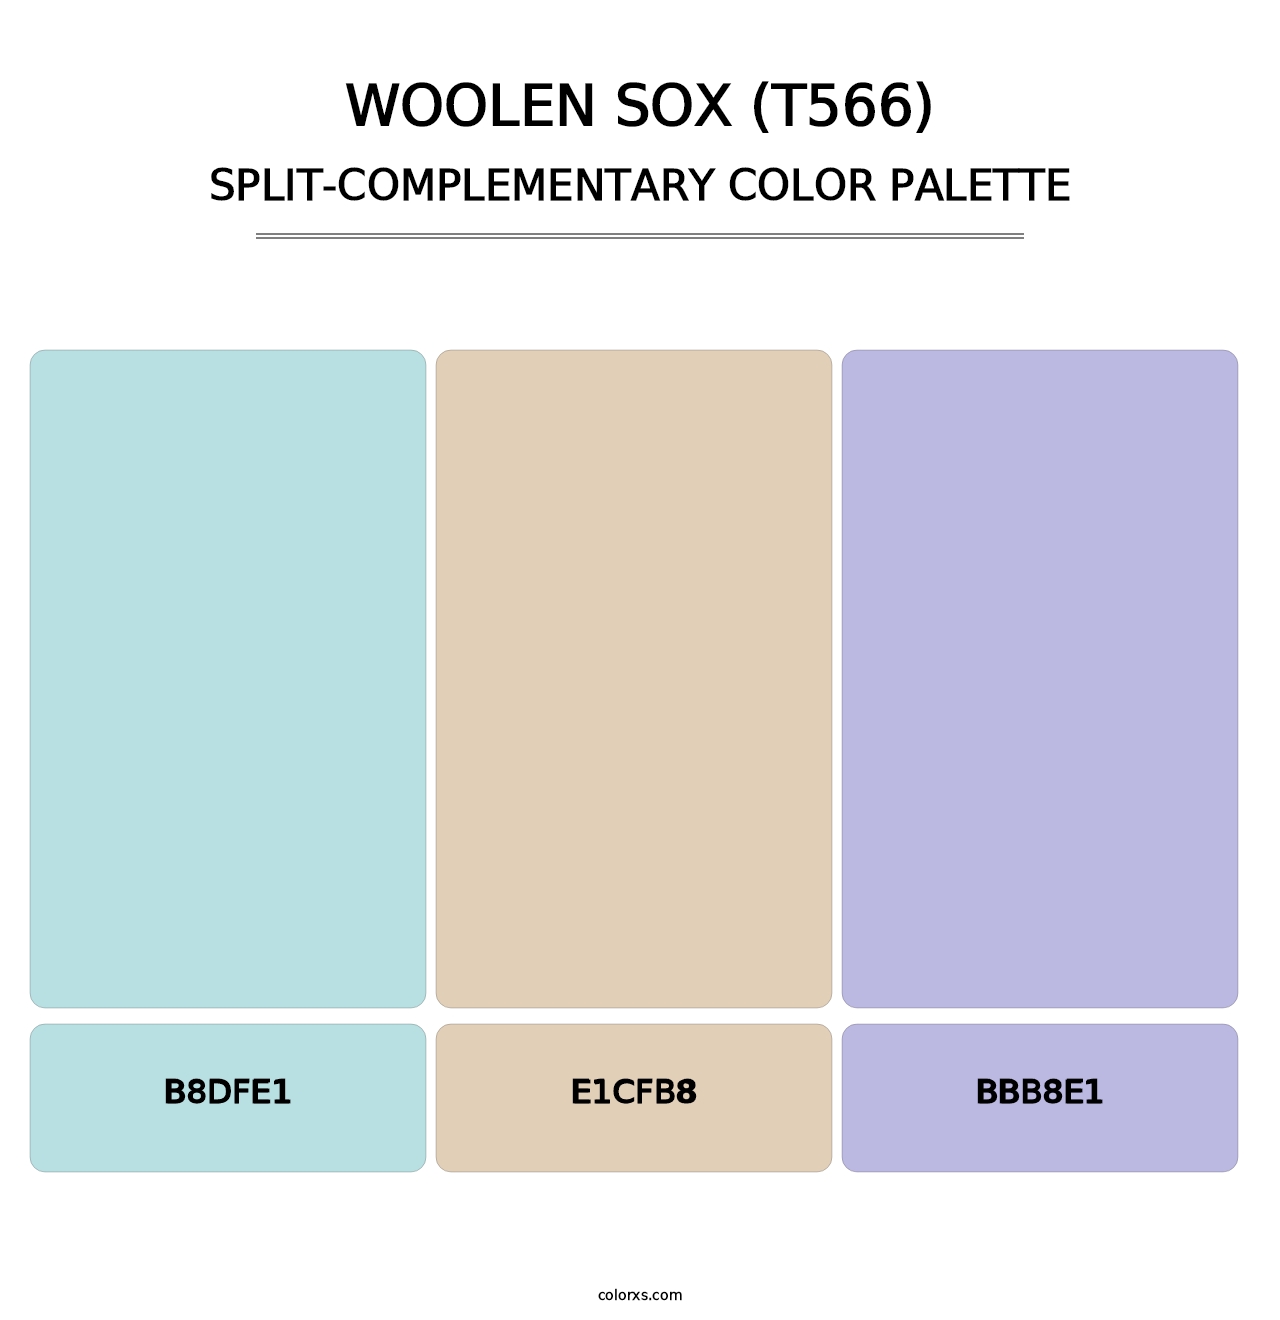 Woolen Sox (T566) - Split-Complementary Color Palette